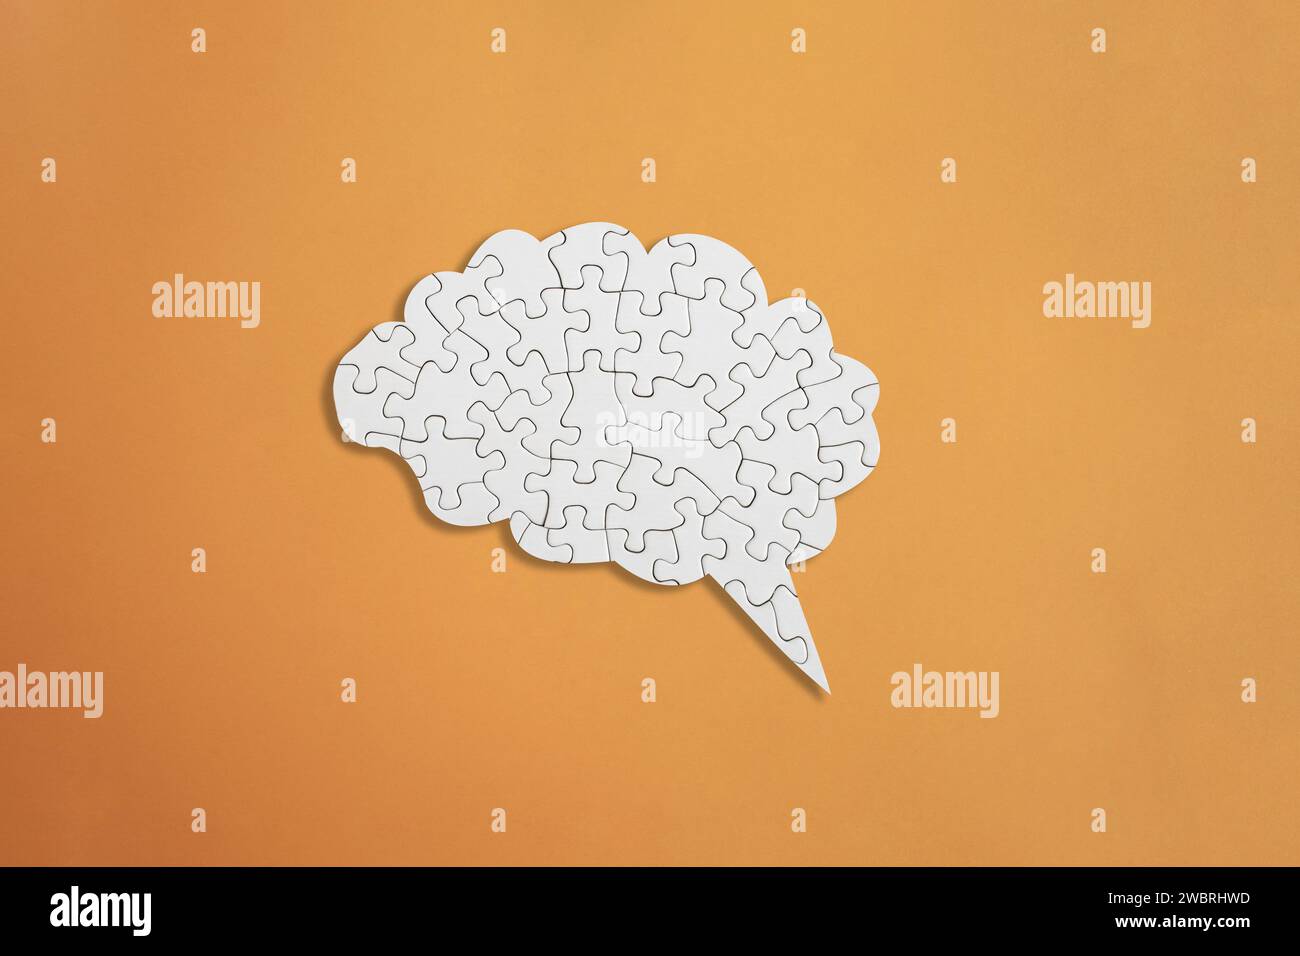 Puzzle blanc en forme de cerveau sur fond orange, santé mentale et problèmes de mémoire Banque D'Images